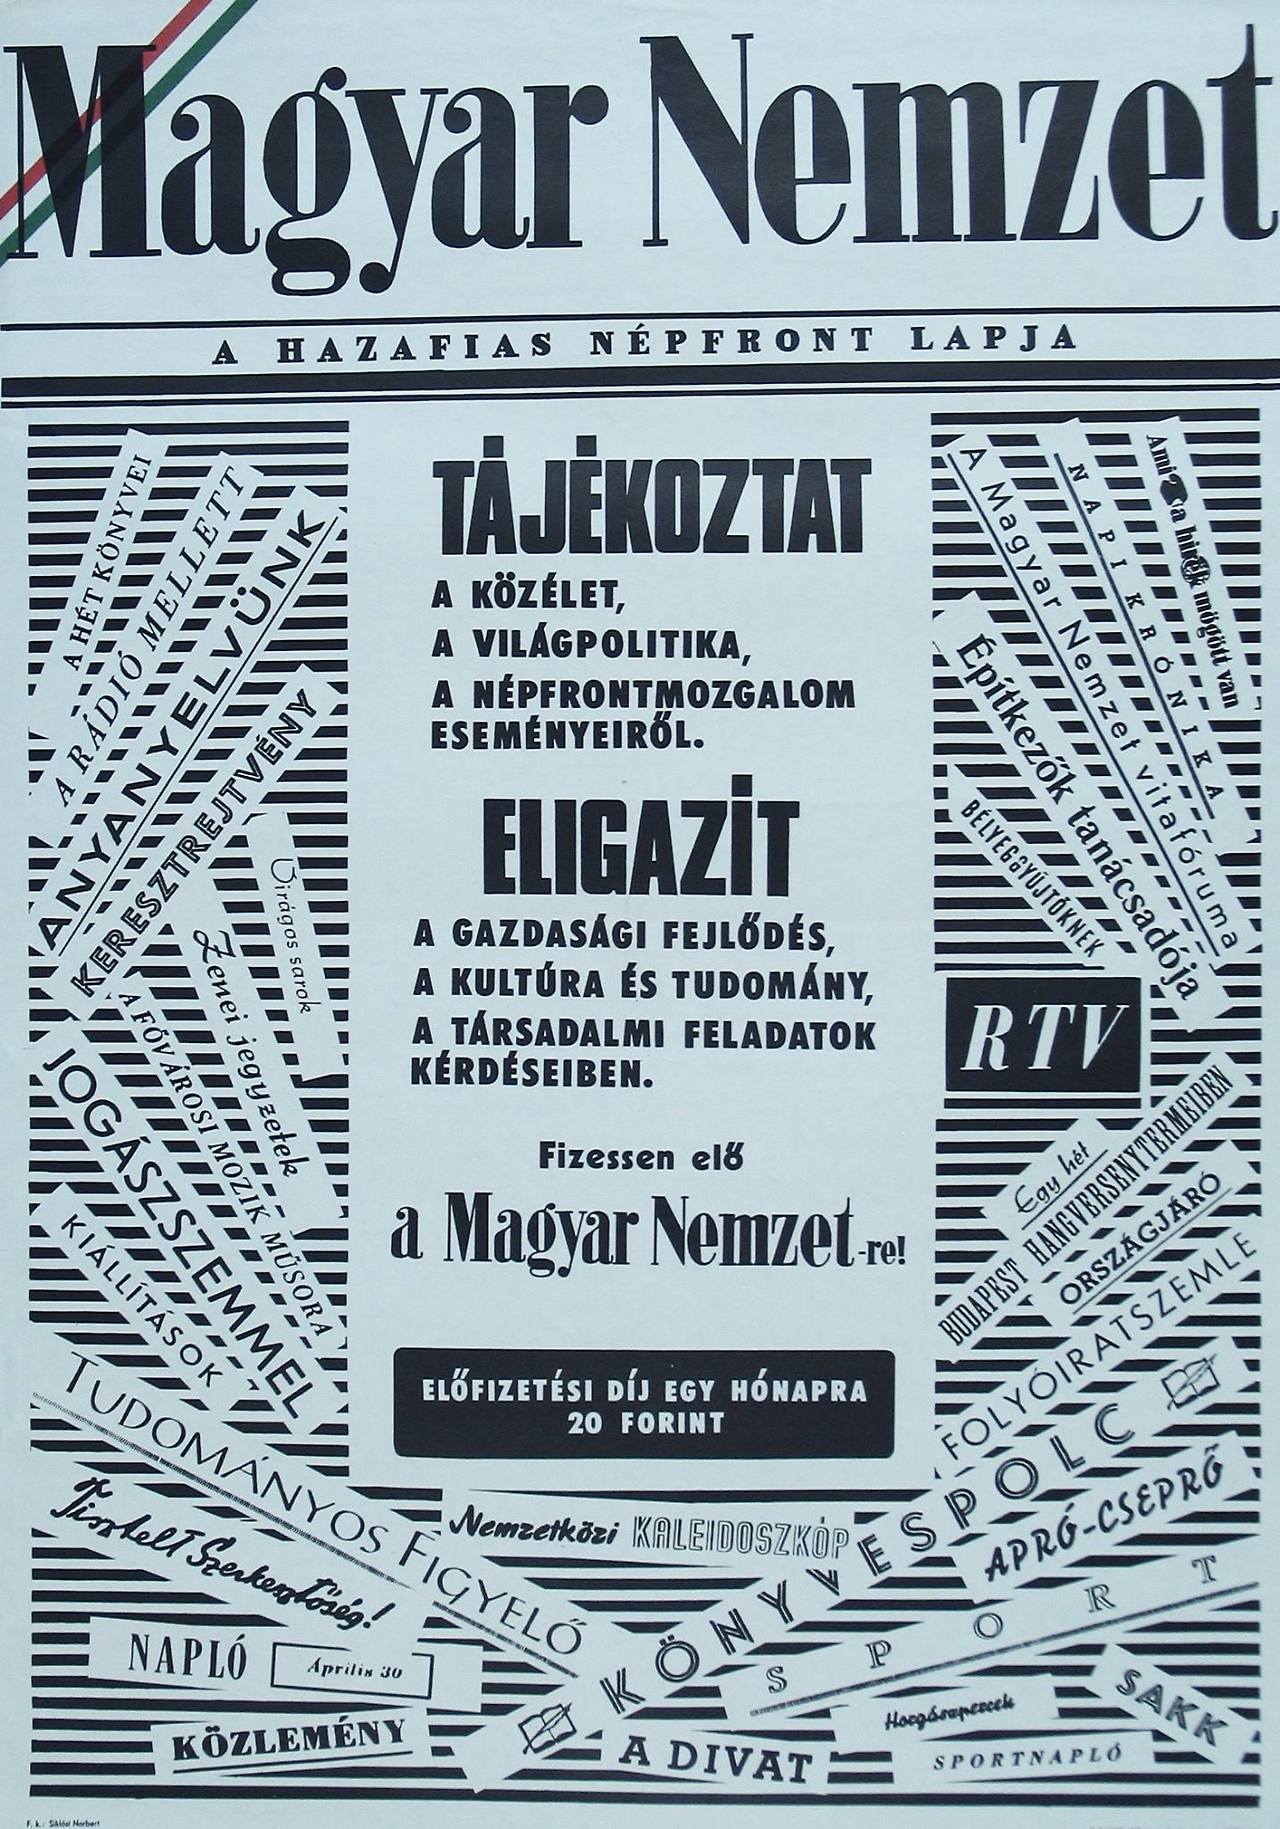 Magyar Nemzet anno.jpg